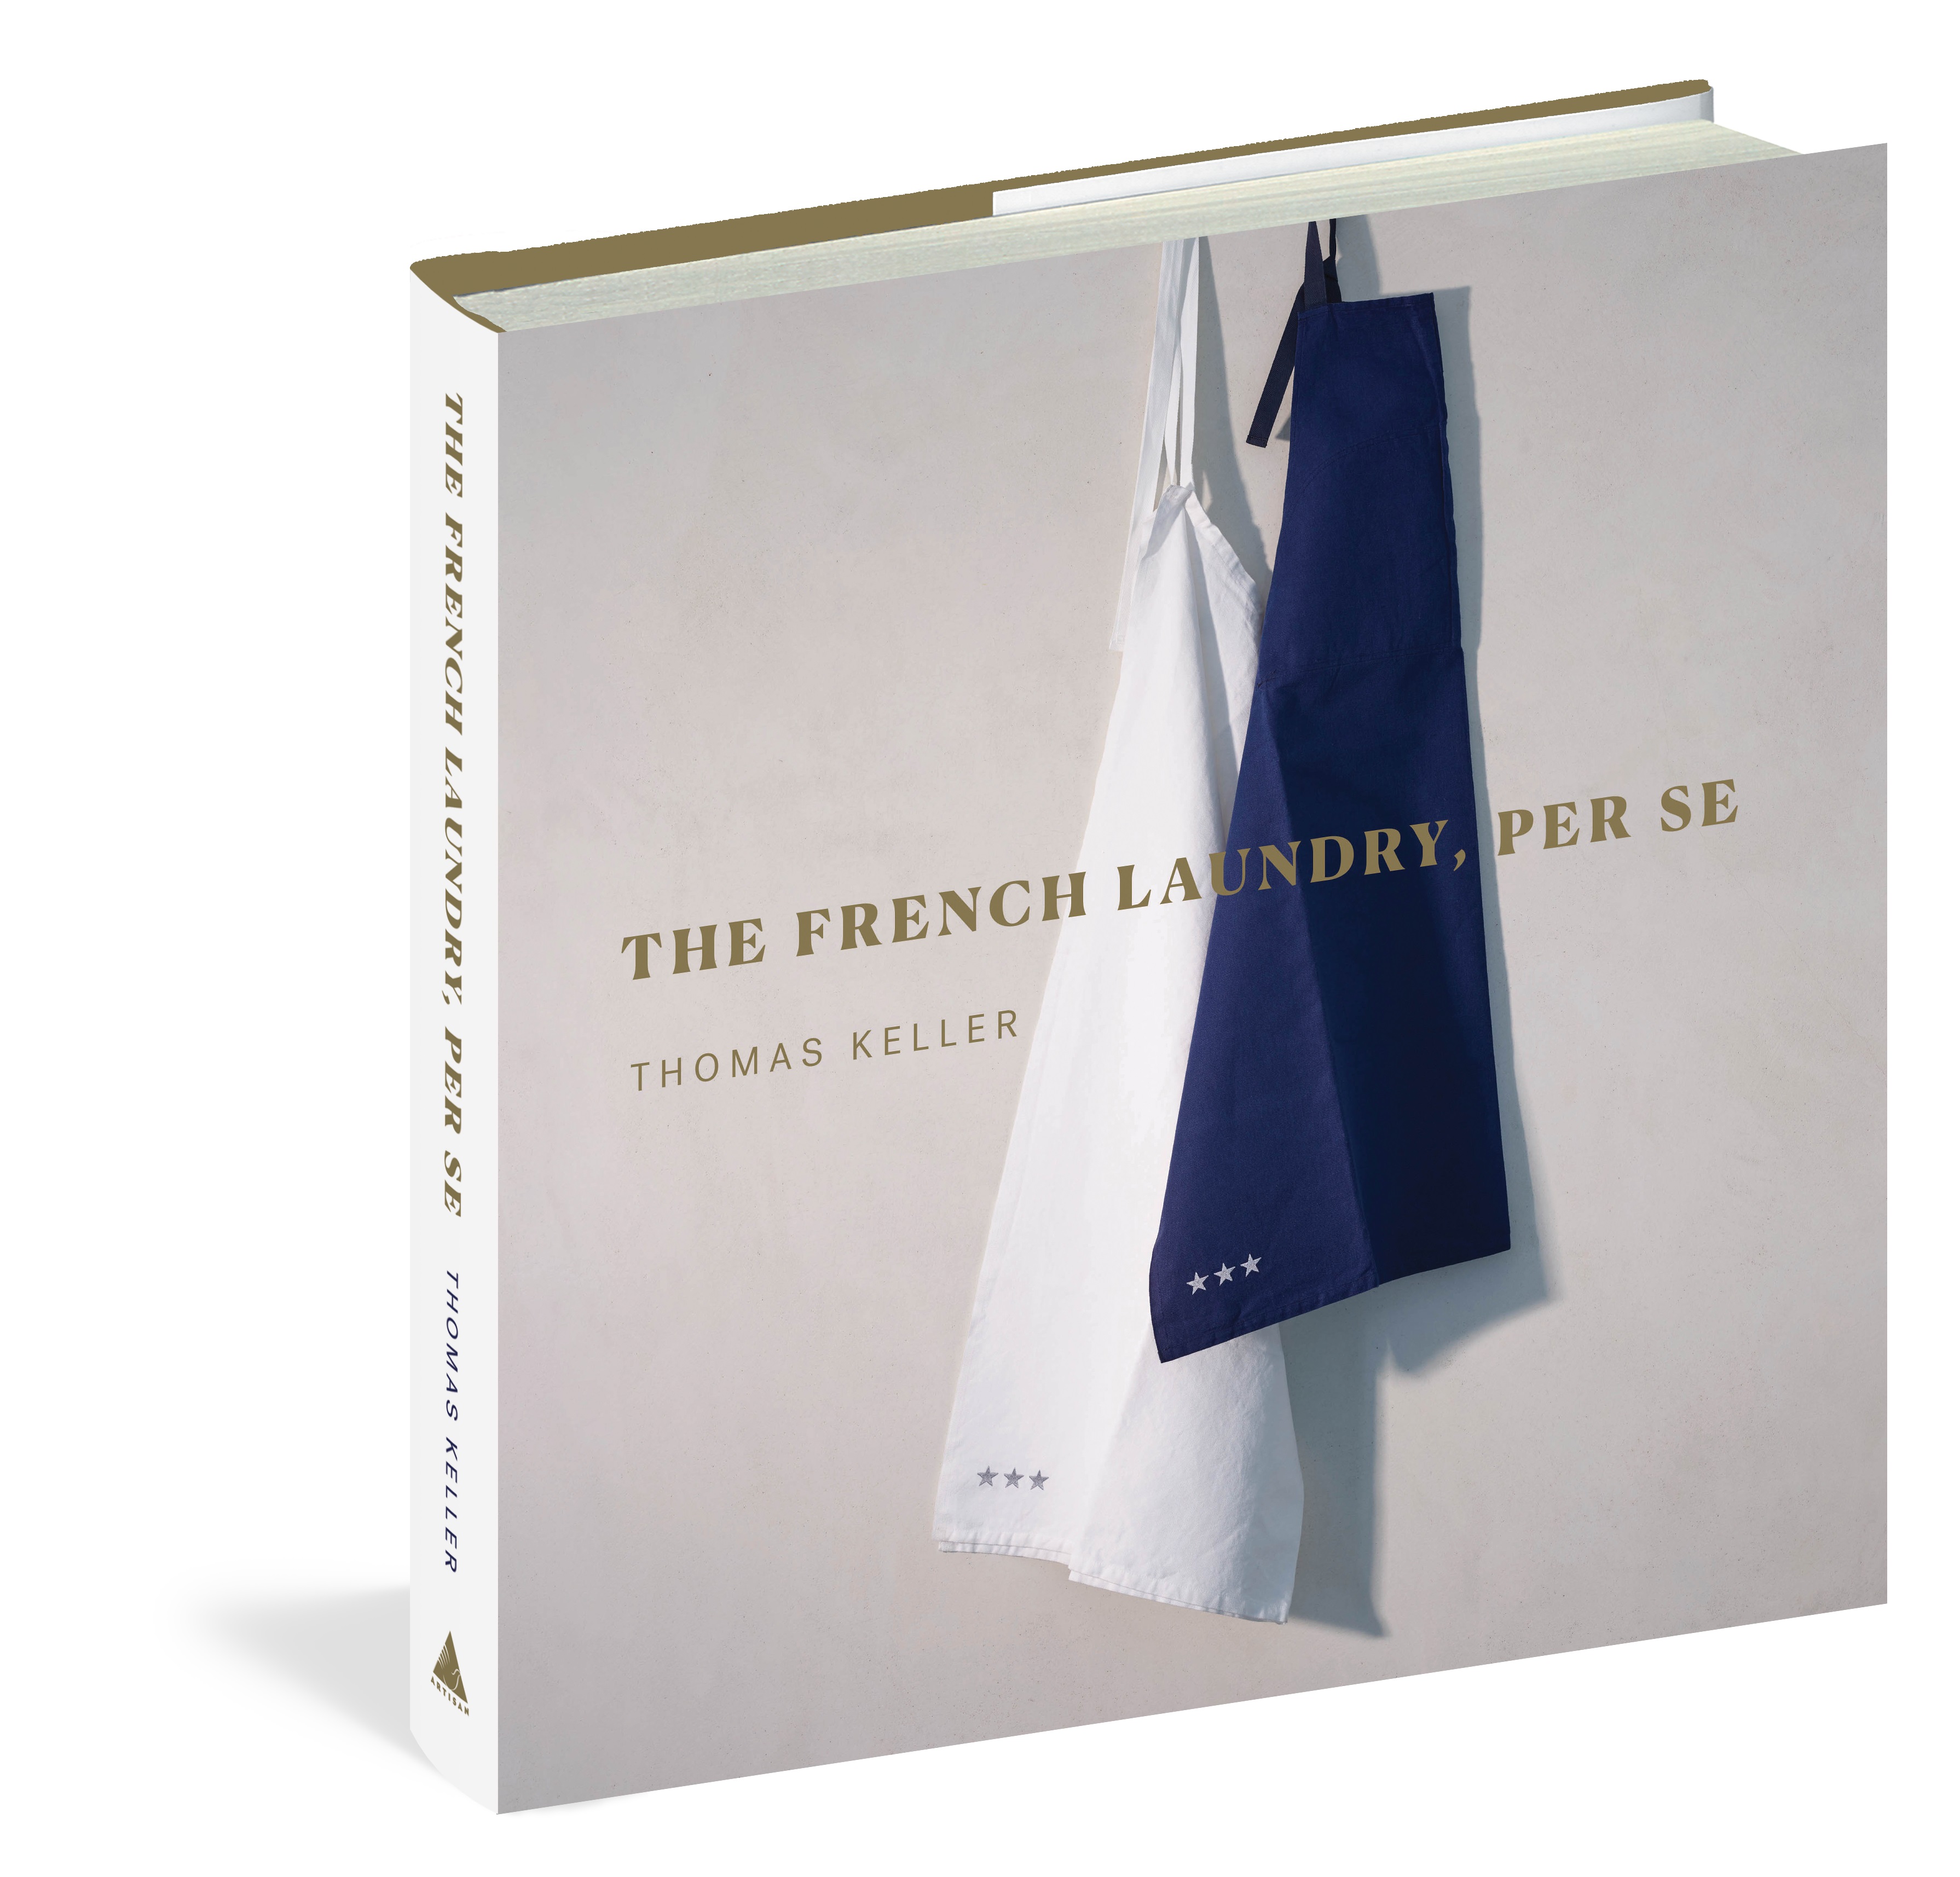 英文原版 米其林三星 法国洗衣房餐厅食谱 Thomas Keller 本质 The French Laundry, Per Se